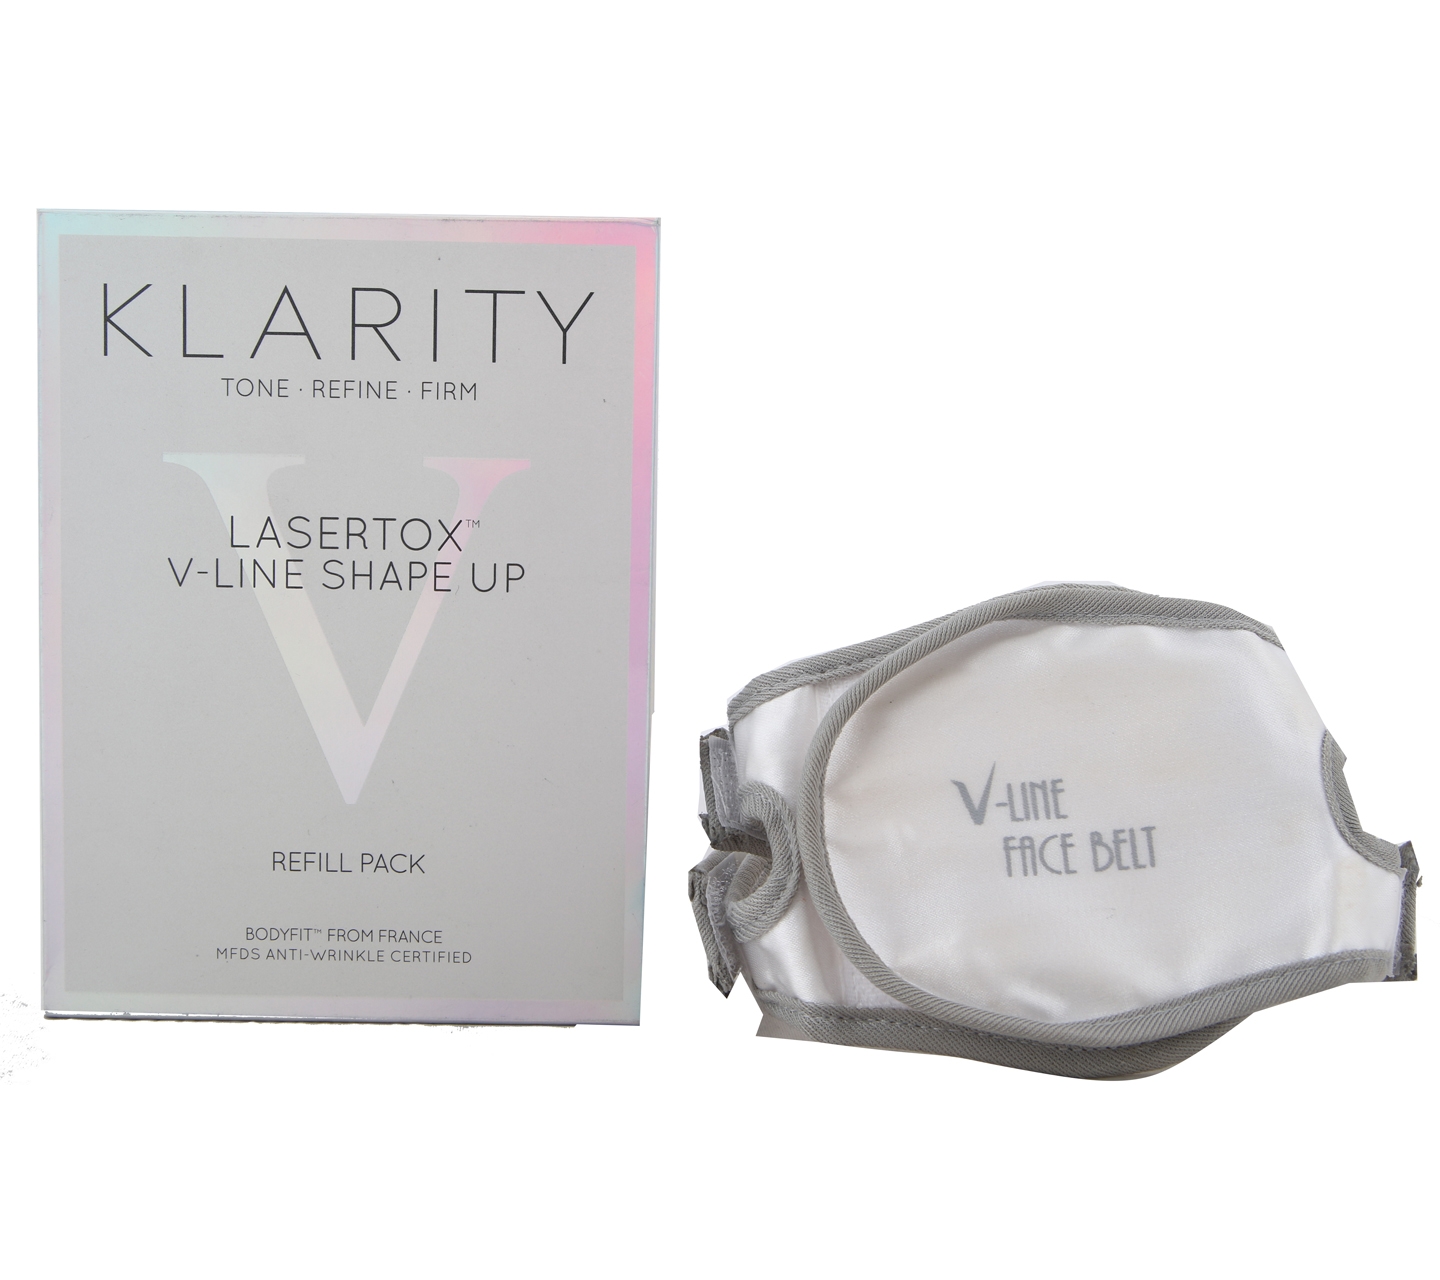 Klarity Lasertox V-Line Shape Up Sets and Palette